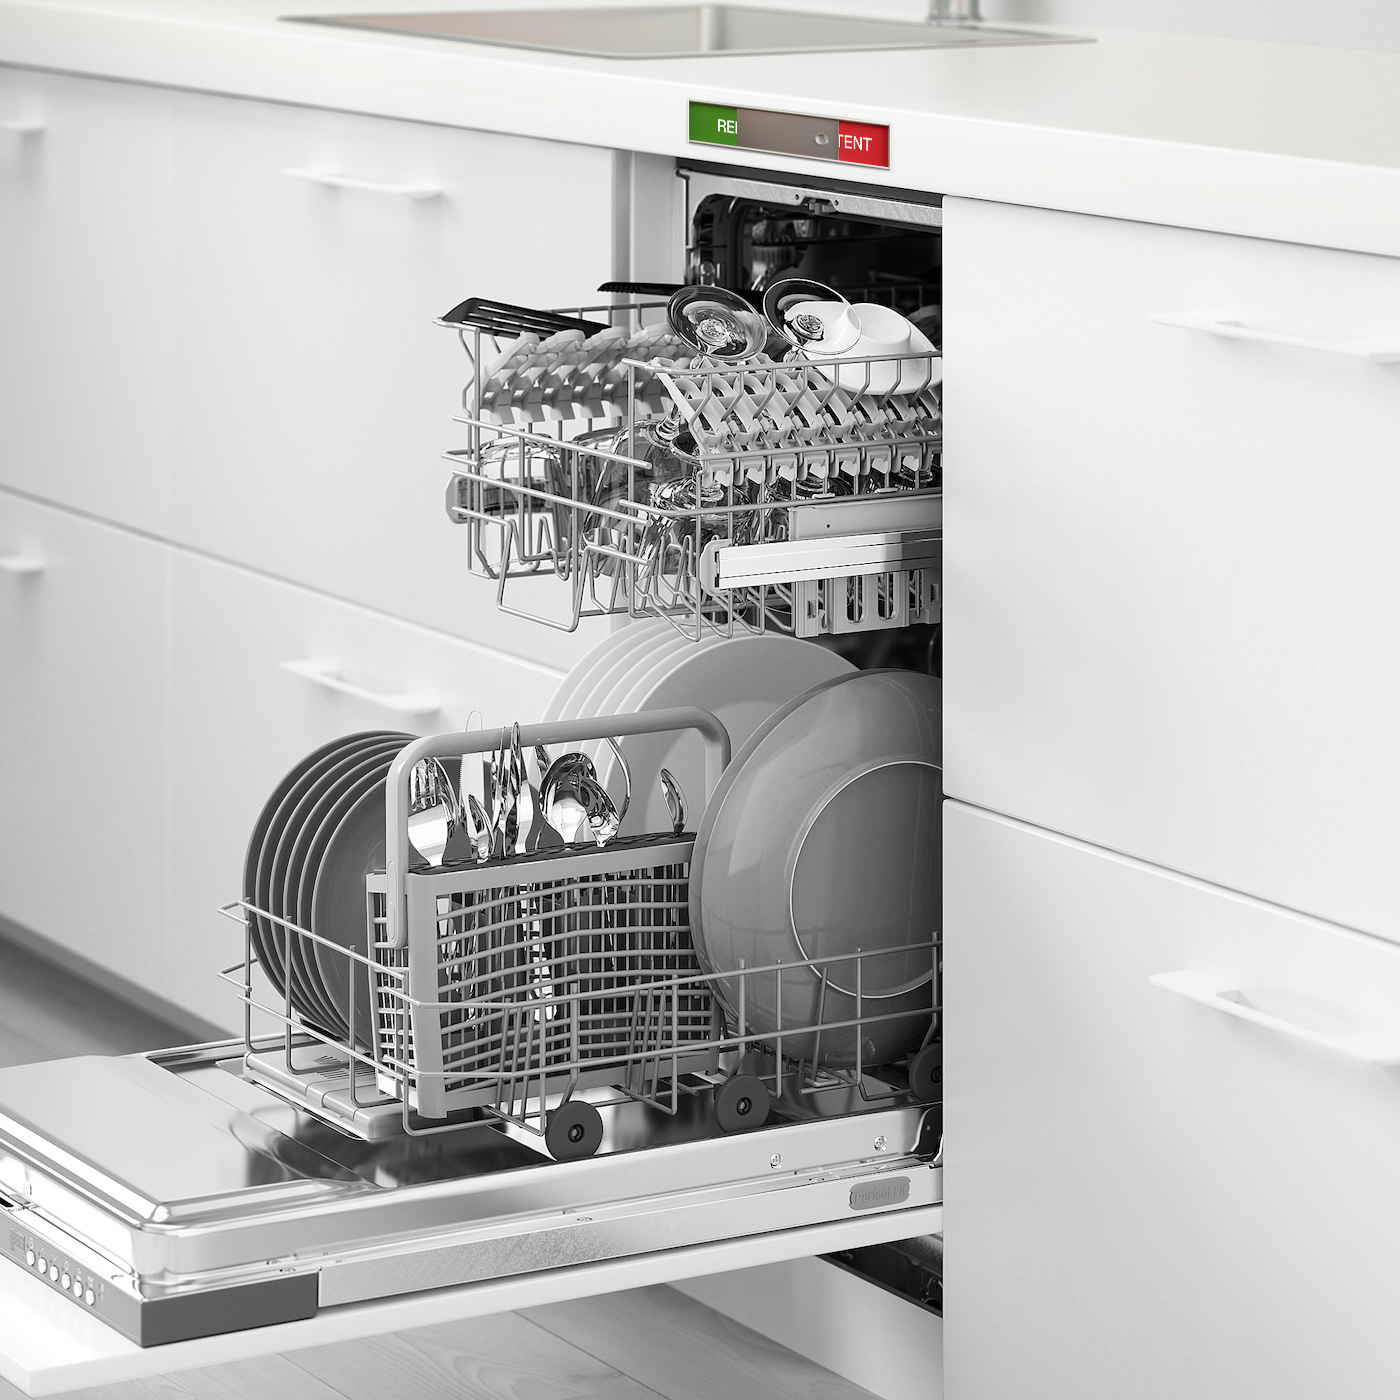 Rent Urent skilt montert over oppvaskmaskin som viser om innholdet i maskinen er vasket eller ikke.